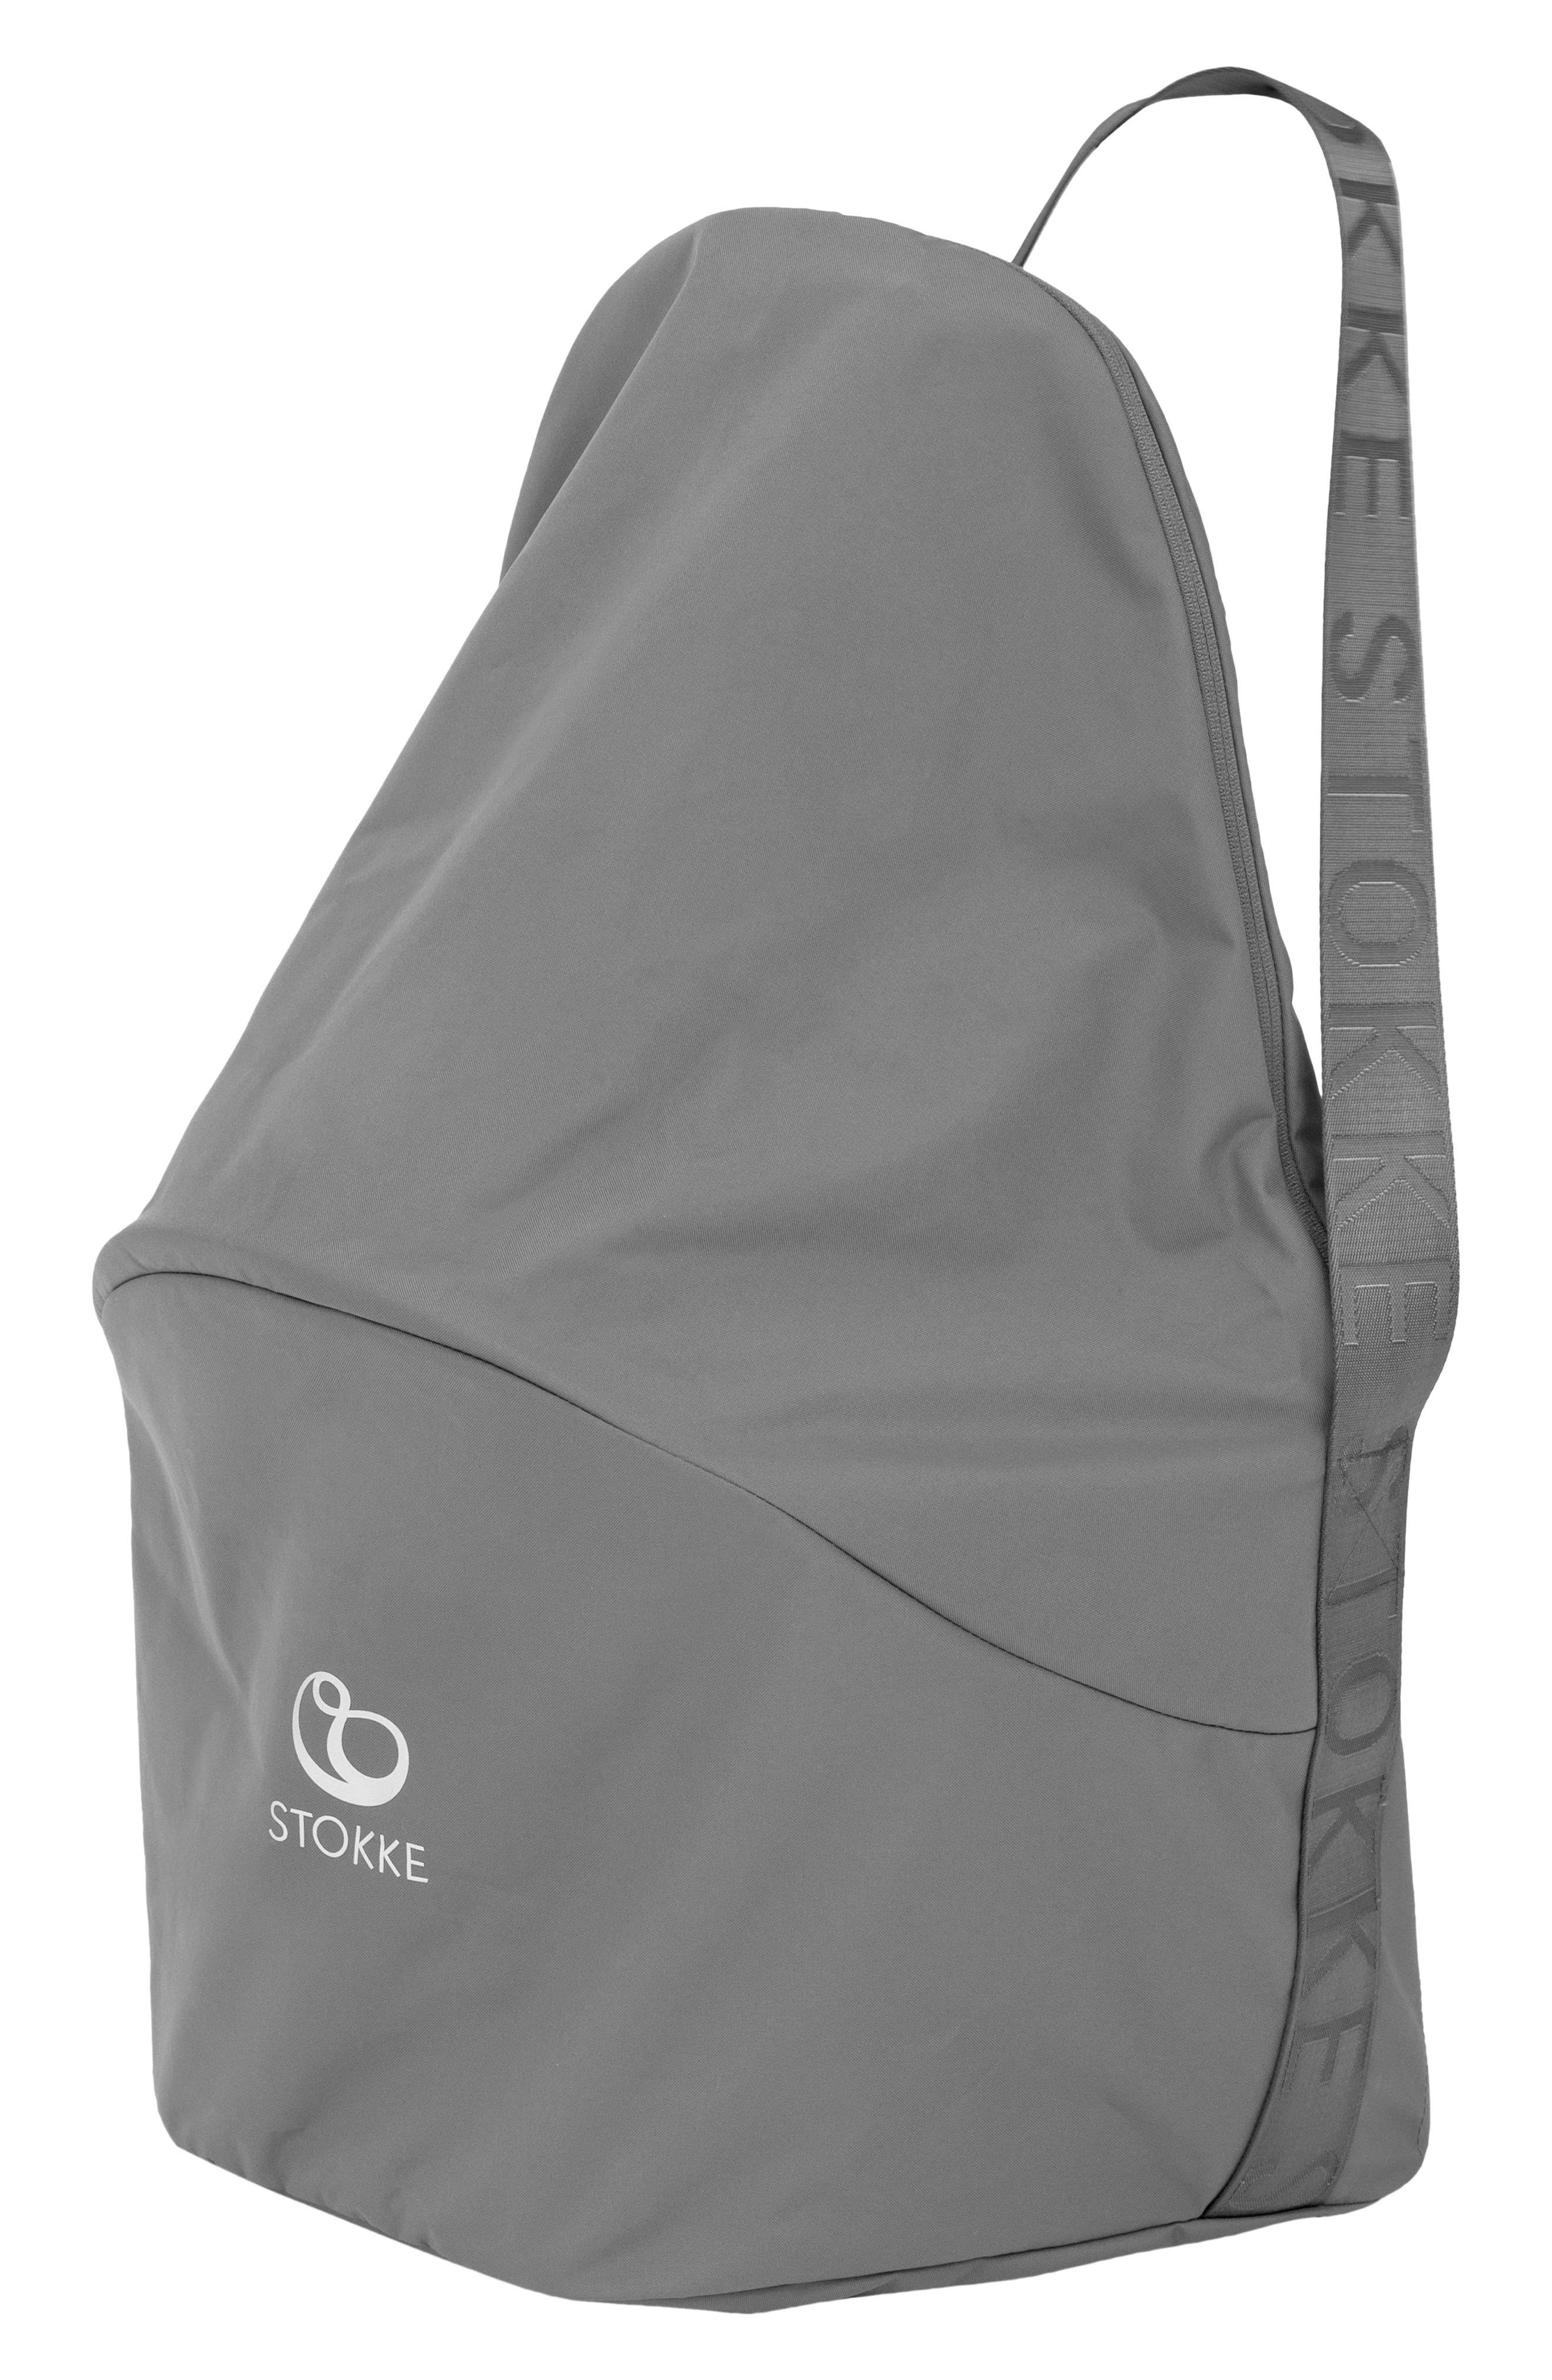 Stokke Clikk High Chair Travel Bag Grey